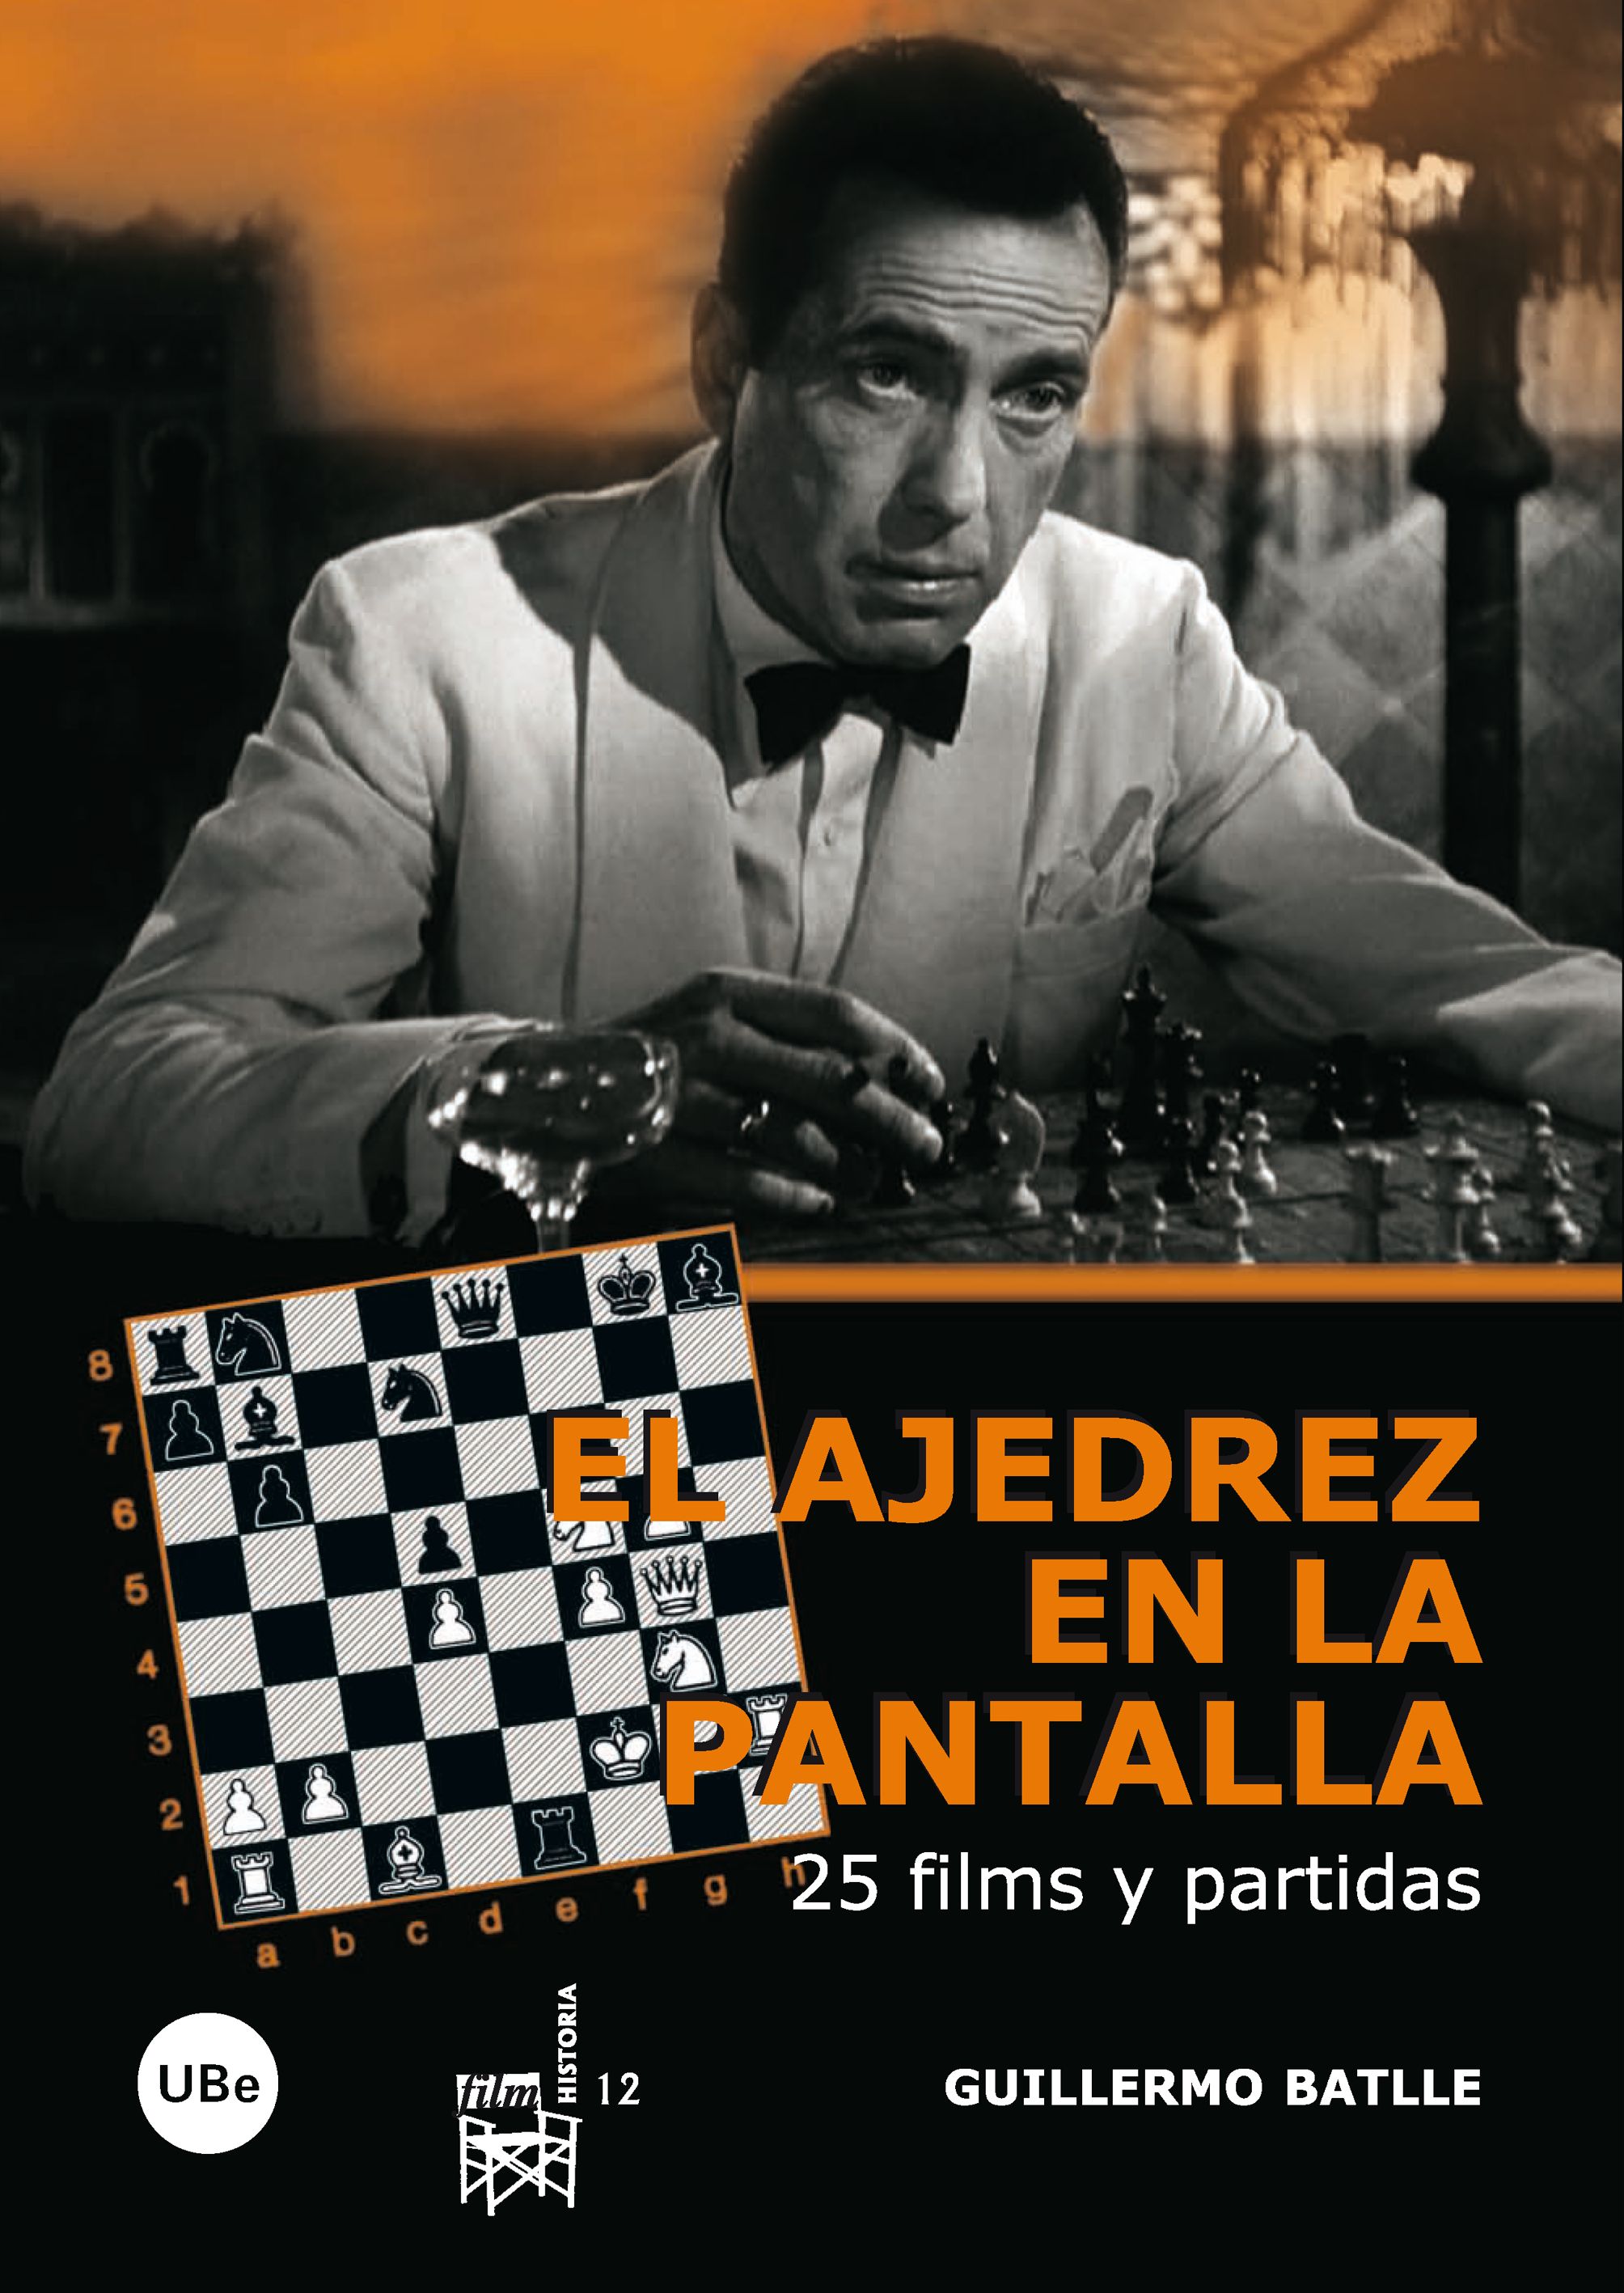 El ajedrez en la pantalla: 25 films y partidas